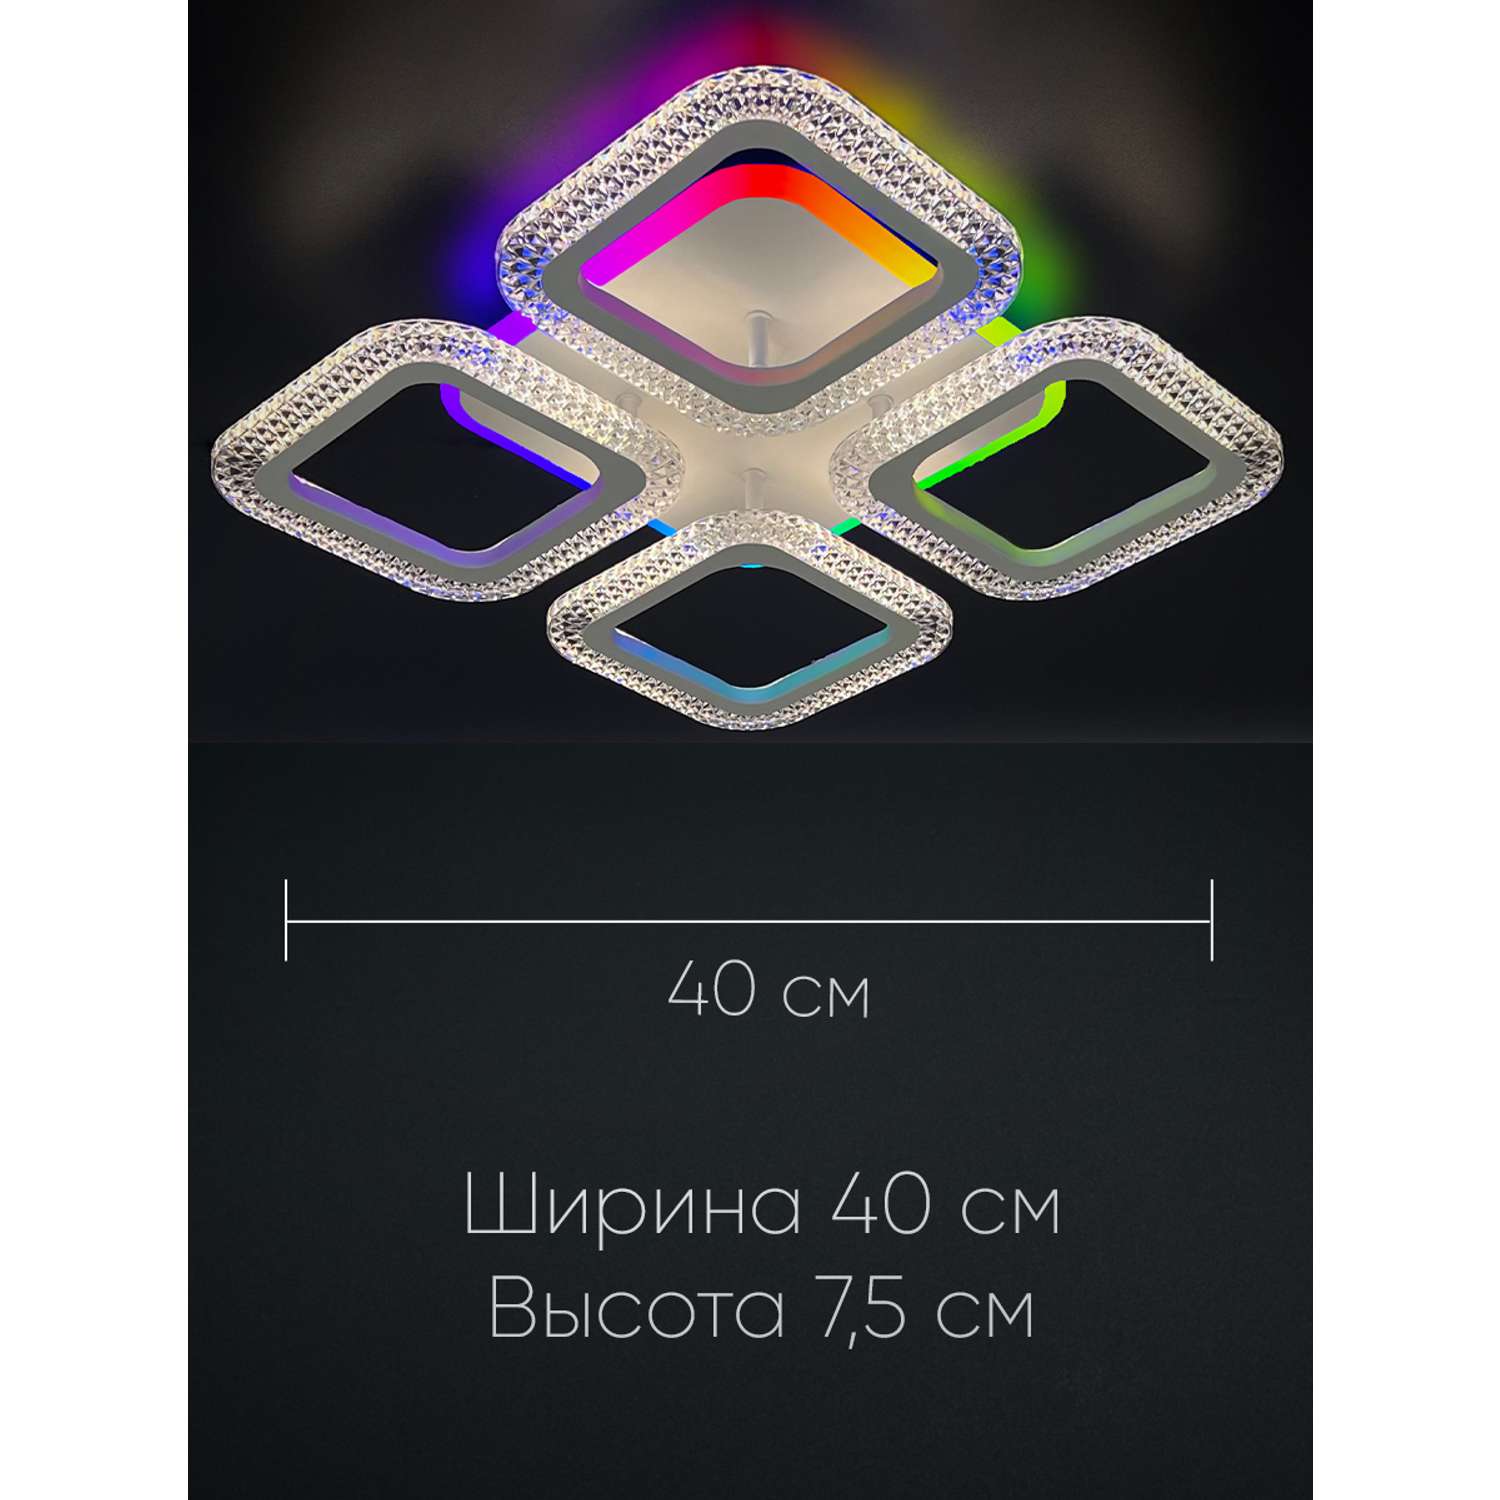 Светильник потолочный Wedo Light светодиодный с RGB-подсветкой - фото 3